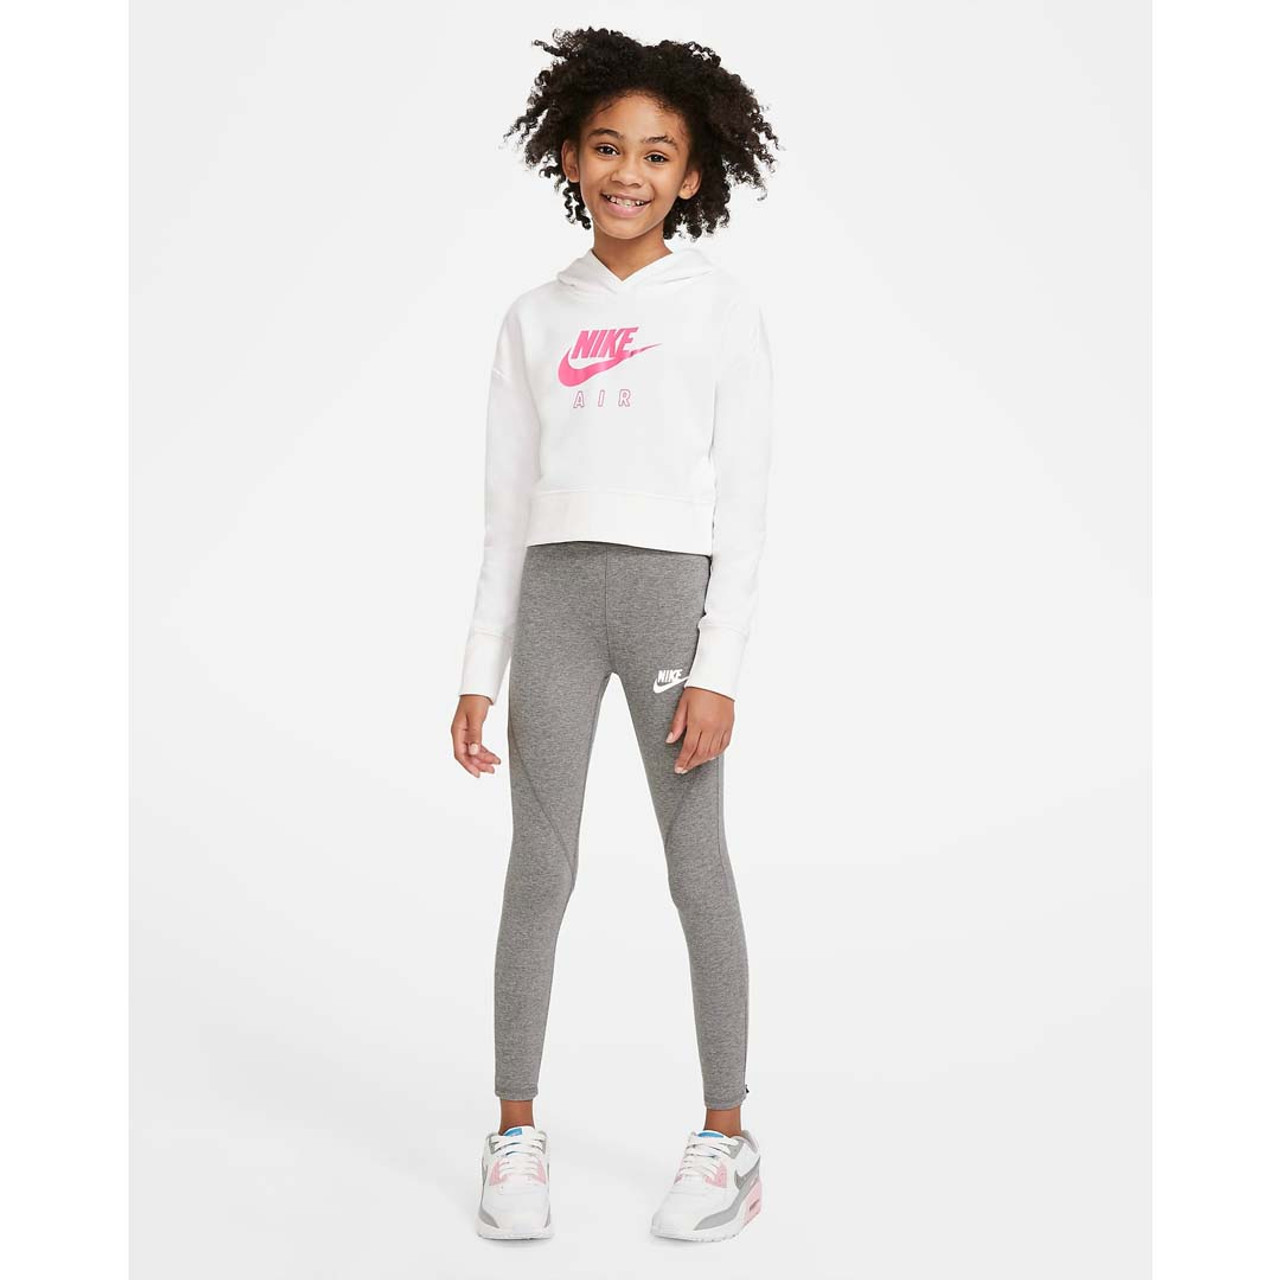 Girls Nike Nike High Waisted Leggings - Girls' Grade School Black/White  Size L - Yahoo Shopping